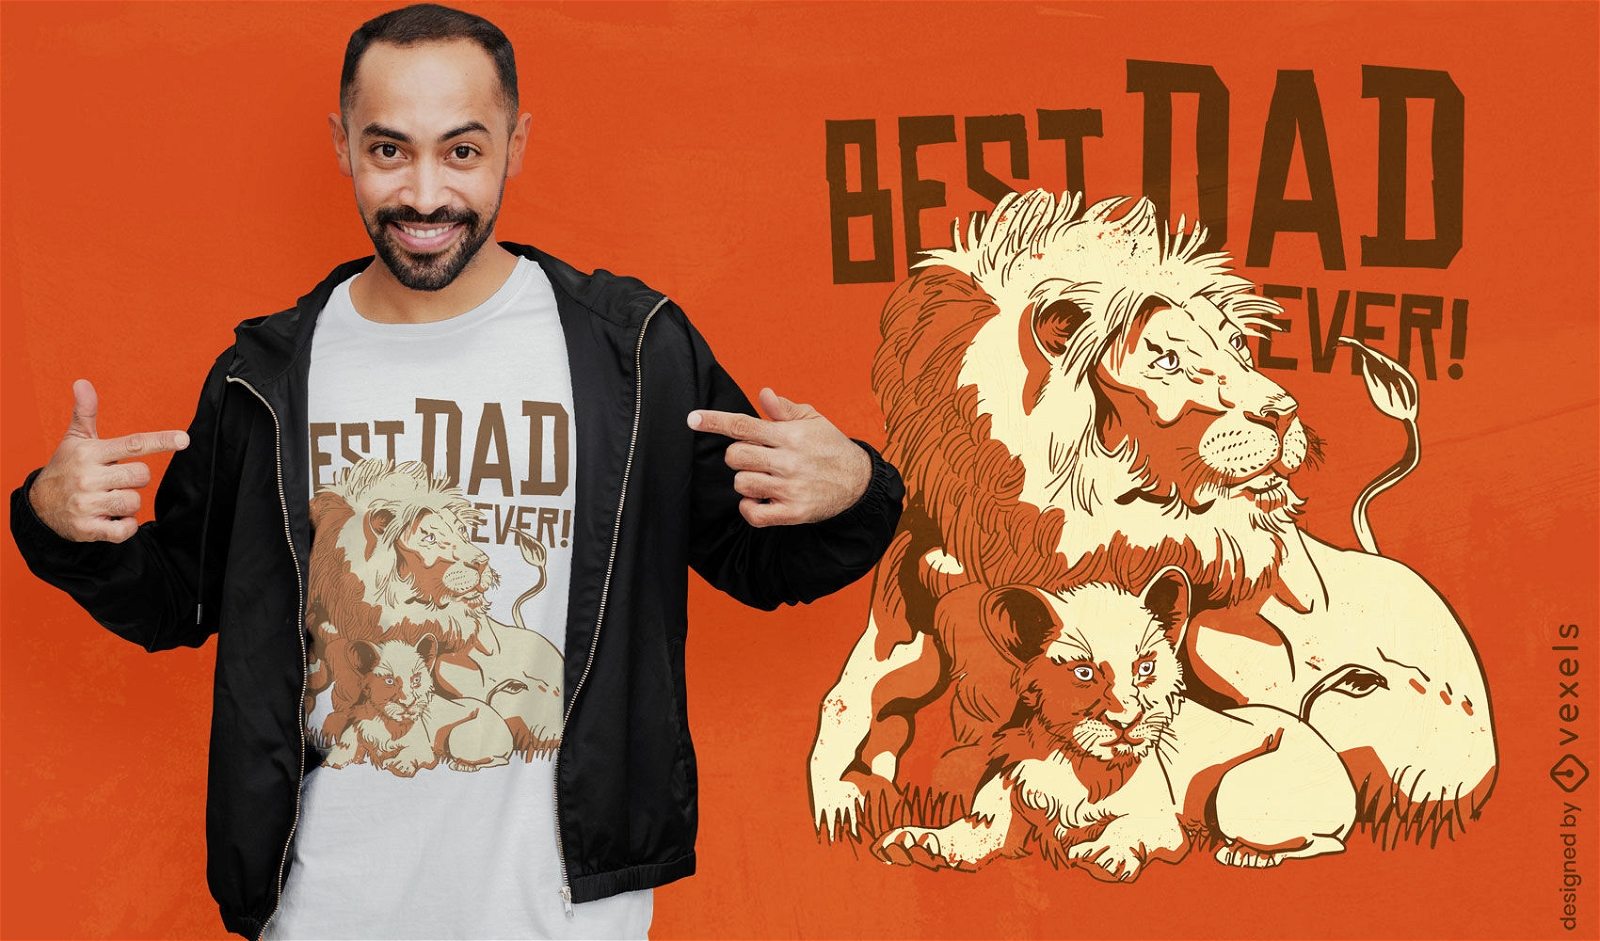 Lion dad quote t-shirt design